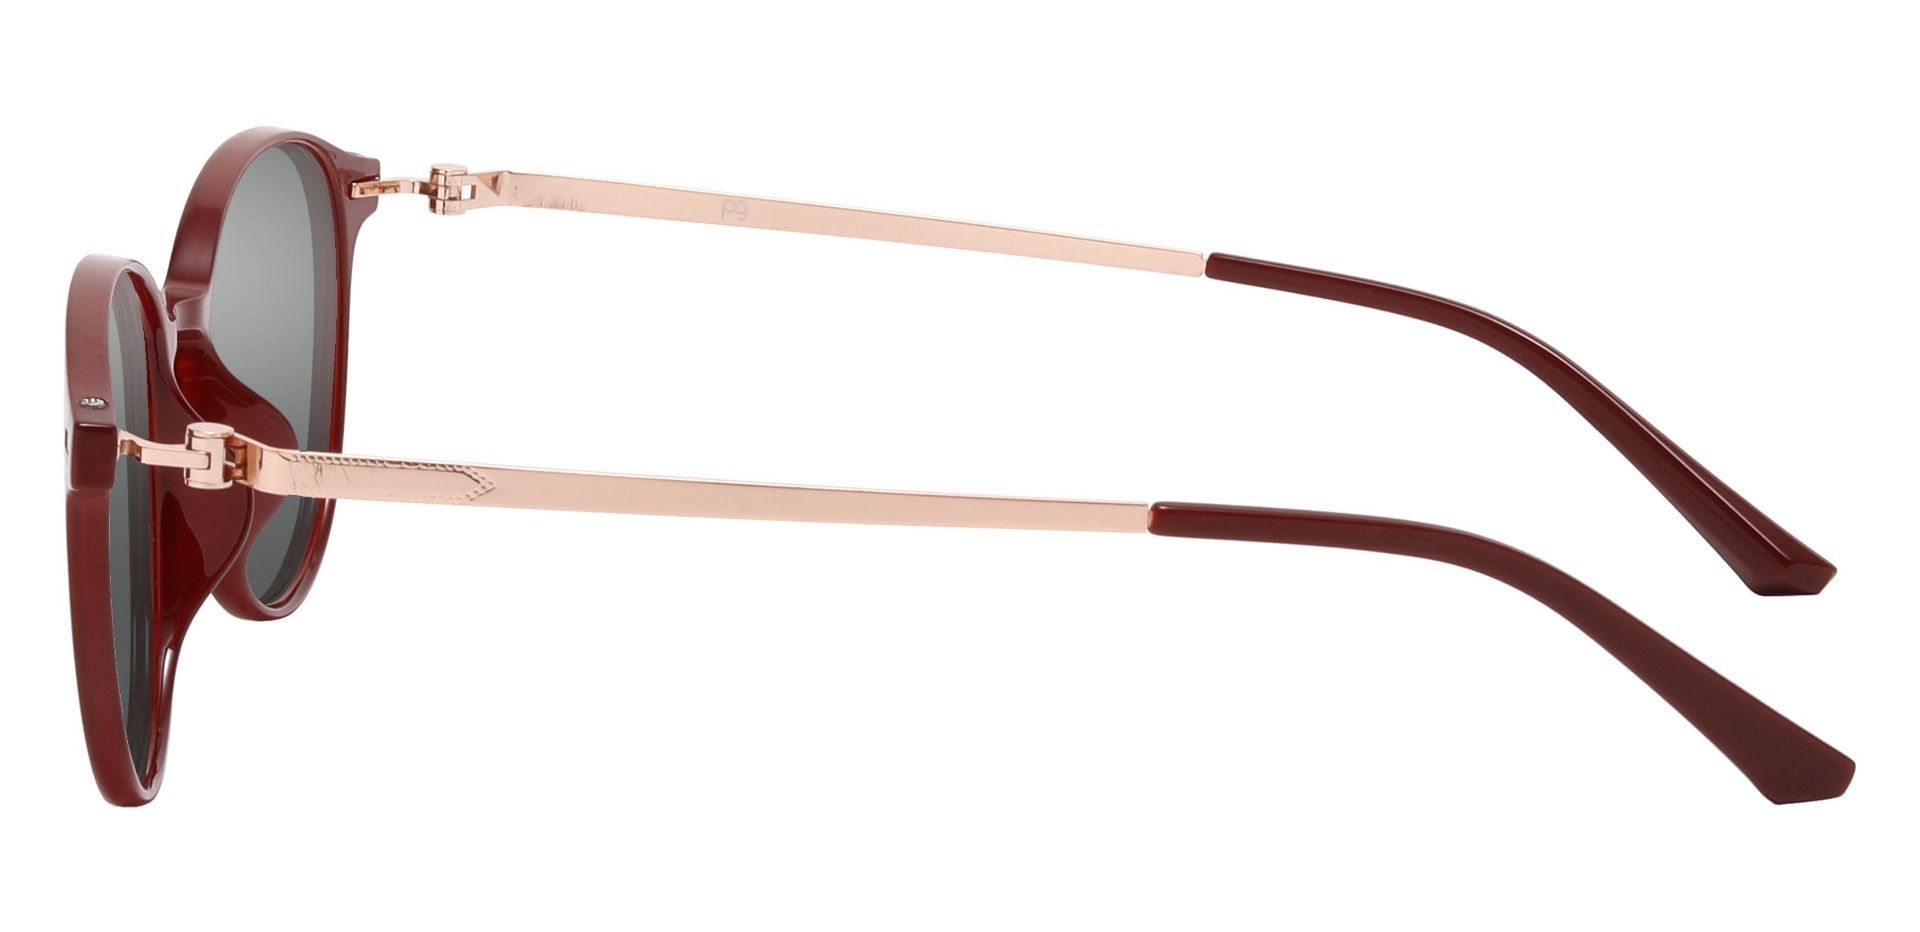 Springer Round Prescription Sunglasses - Red Frame With Gray Lenses